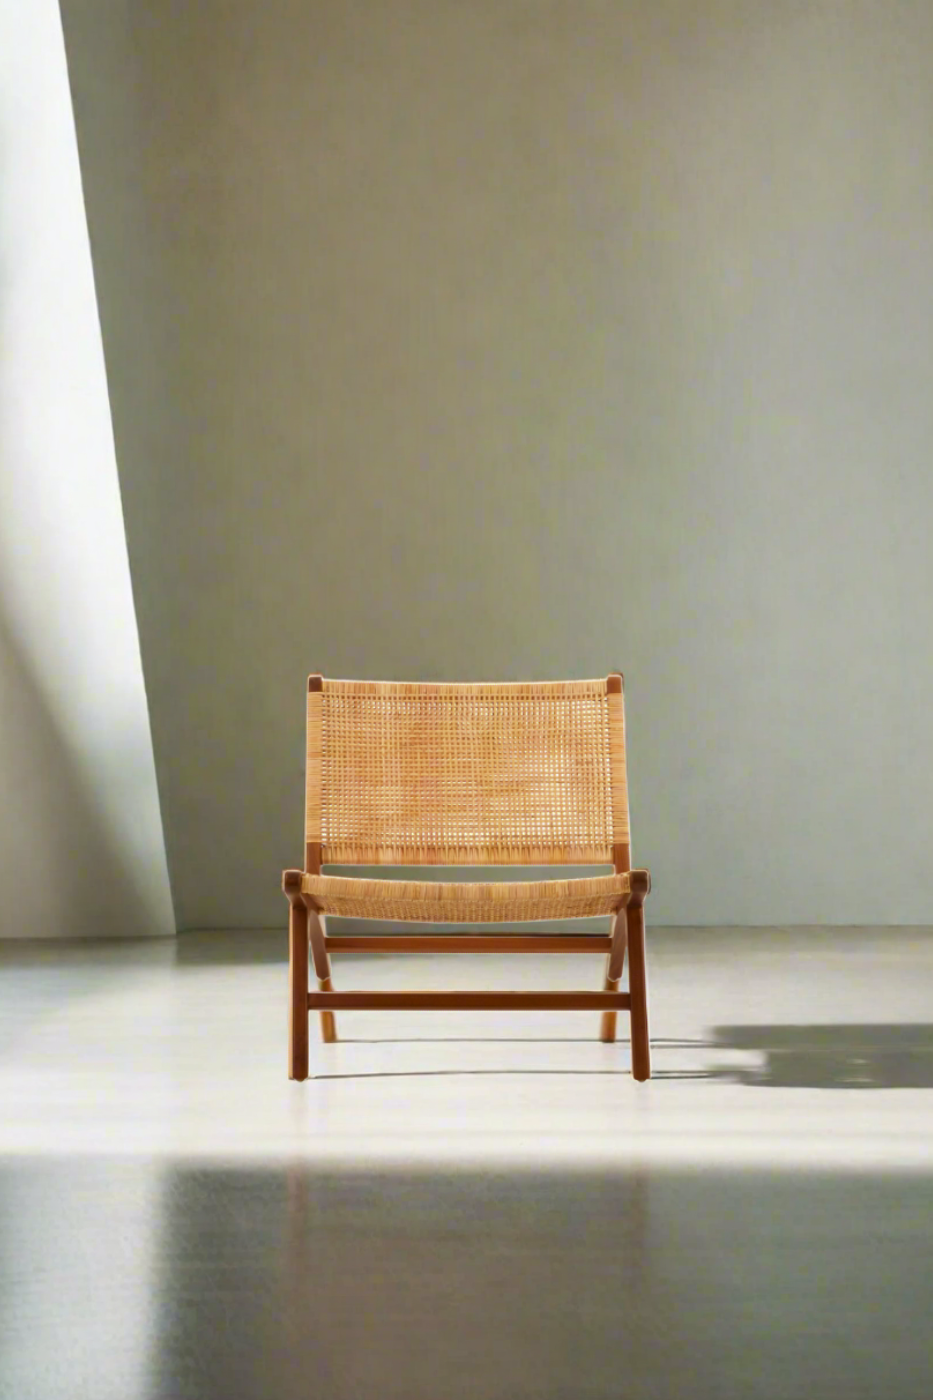 Helen Lounge Chair - Natural Rattan & Teak